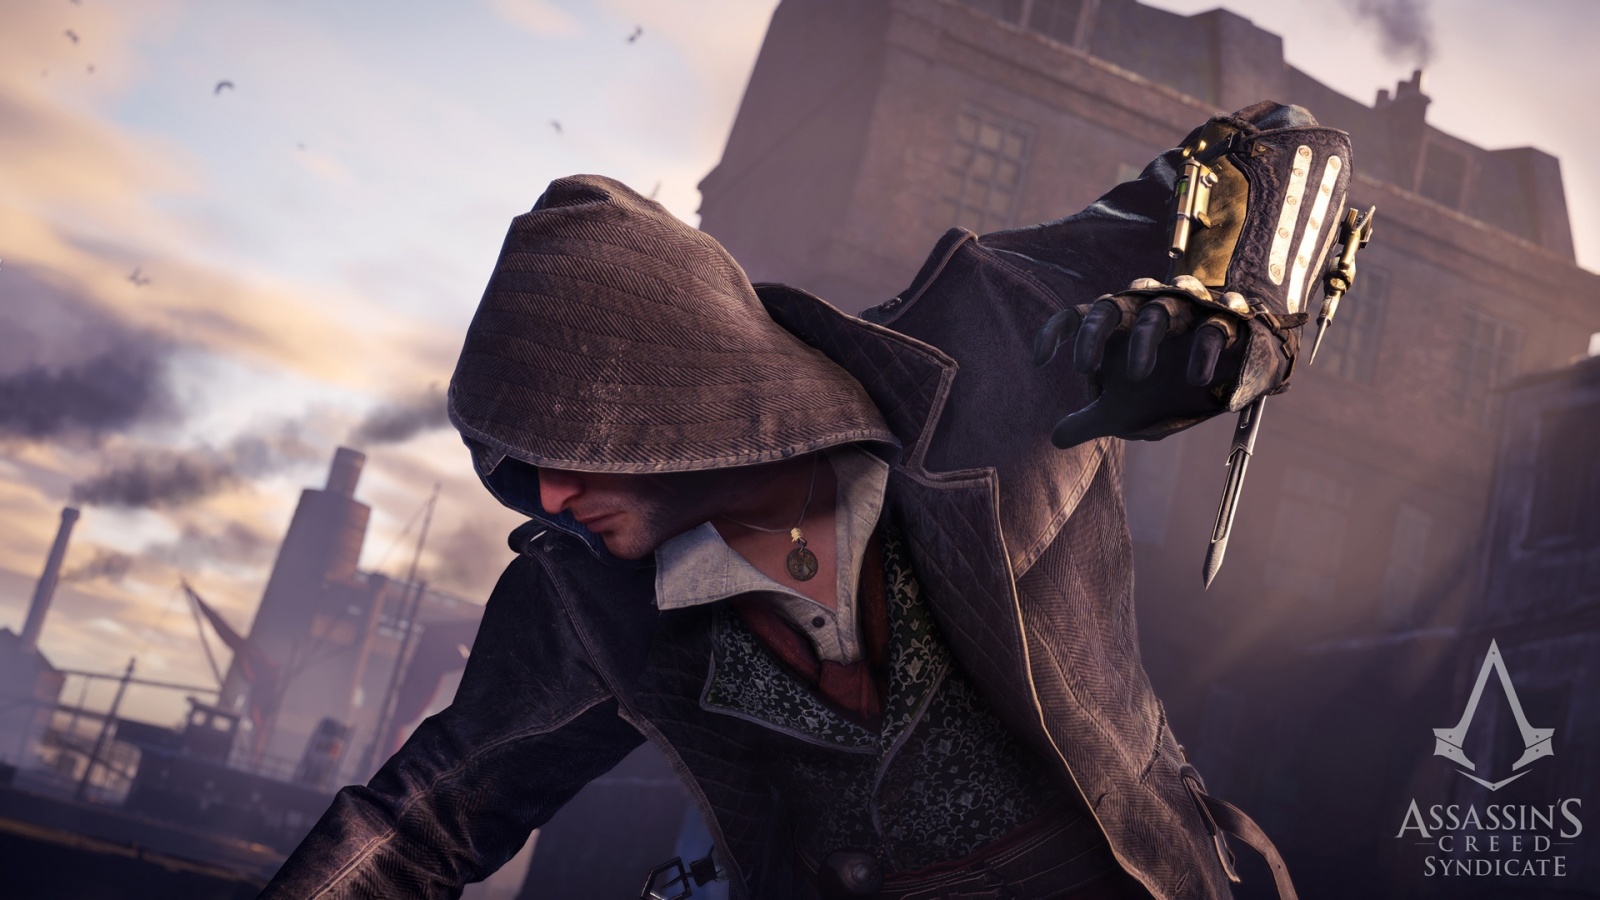 Jacob Frye Hidden Blade Assassins Creed Syndicate - Assassin's Creed Syndicate Hidden Blade In Game , HD Wallpaper & Backgrounds